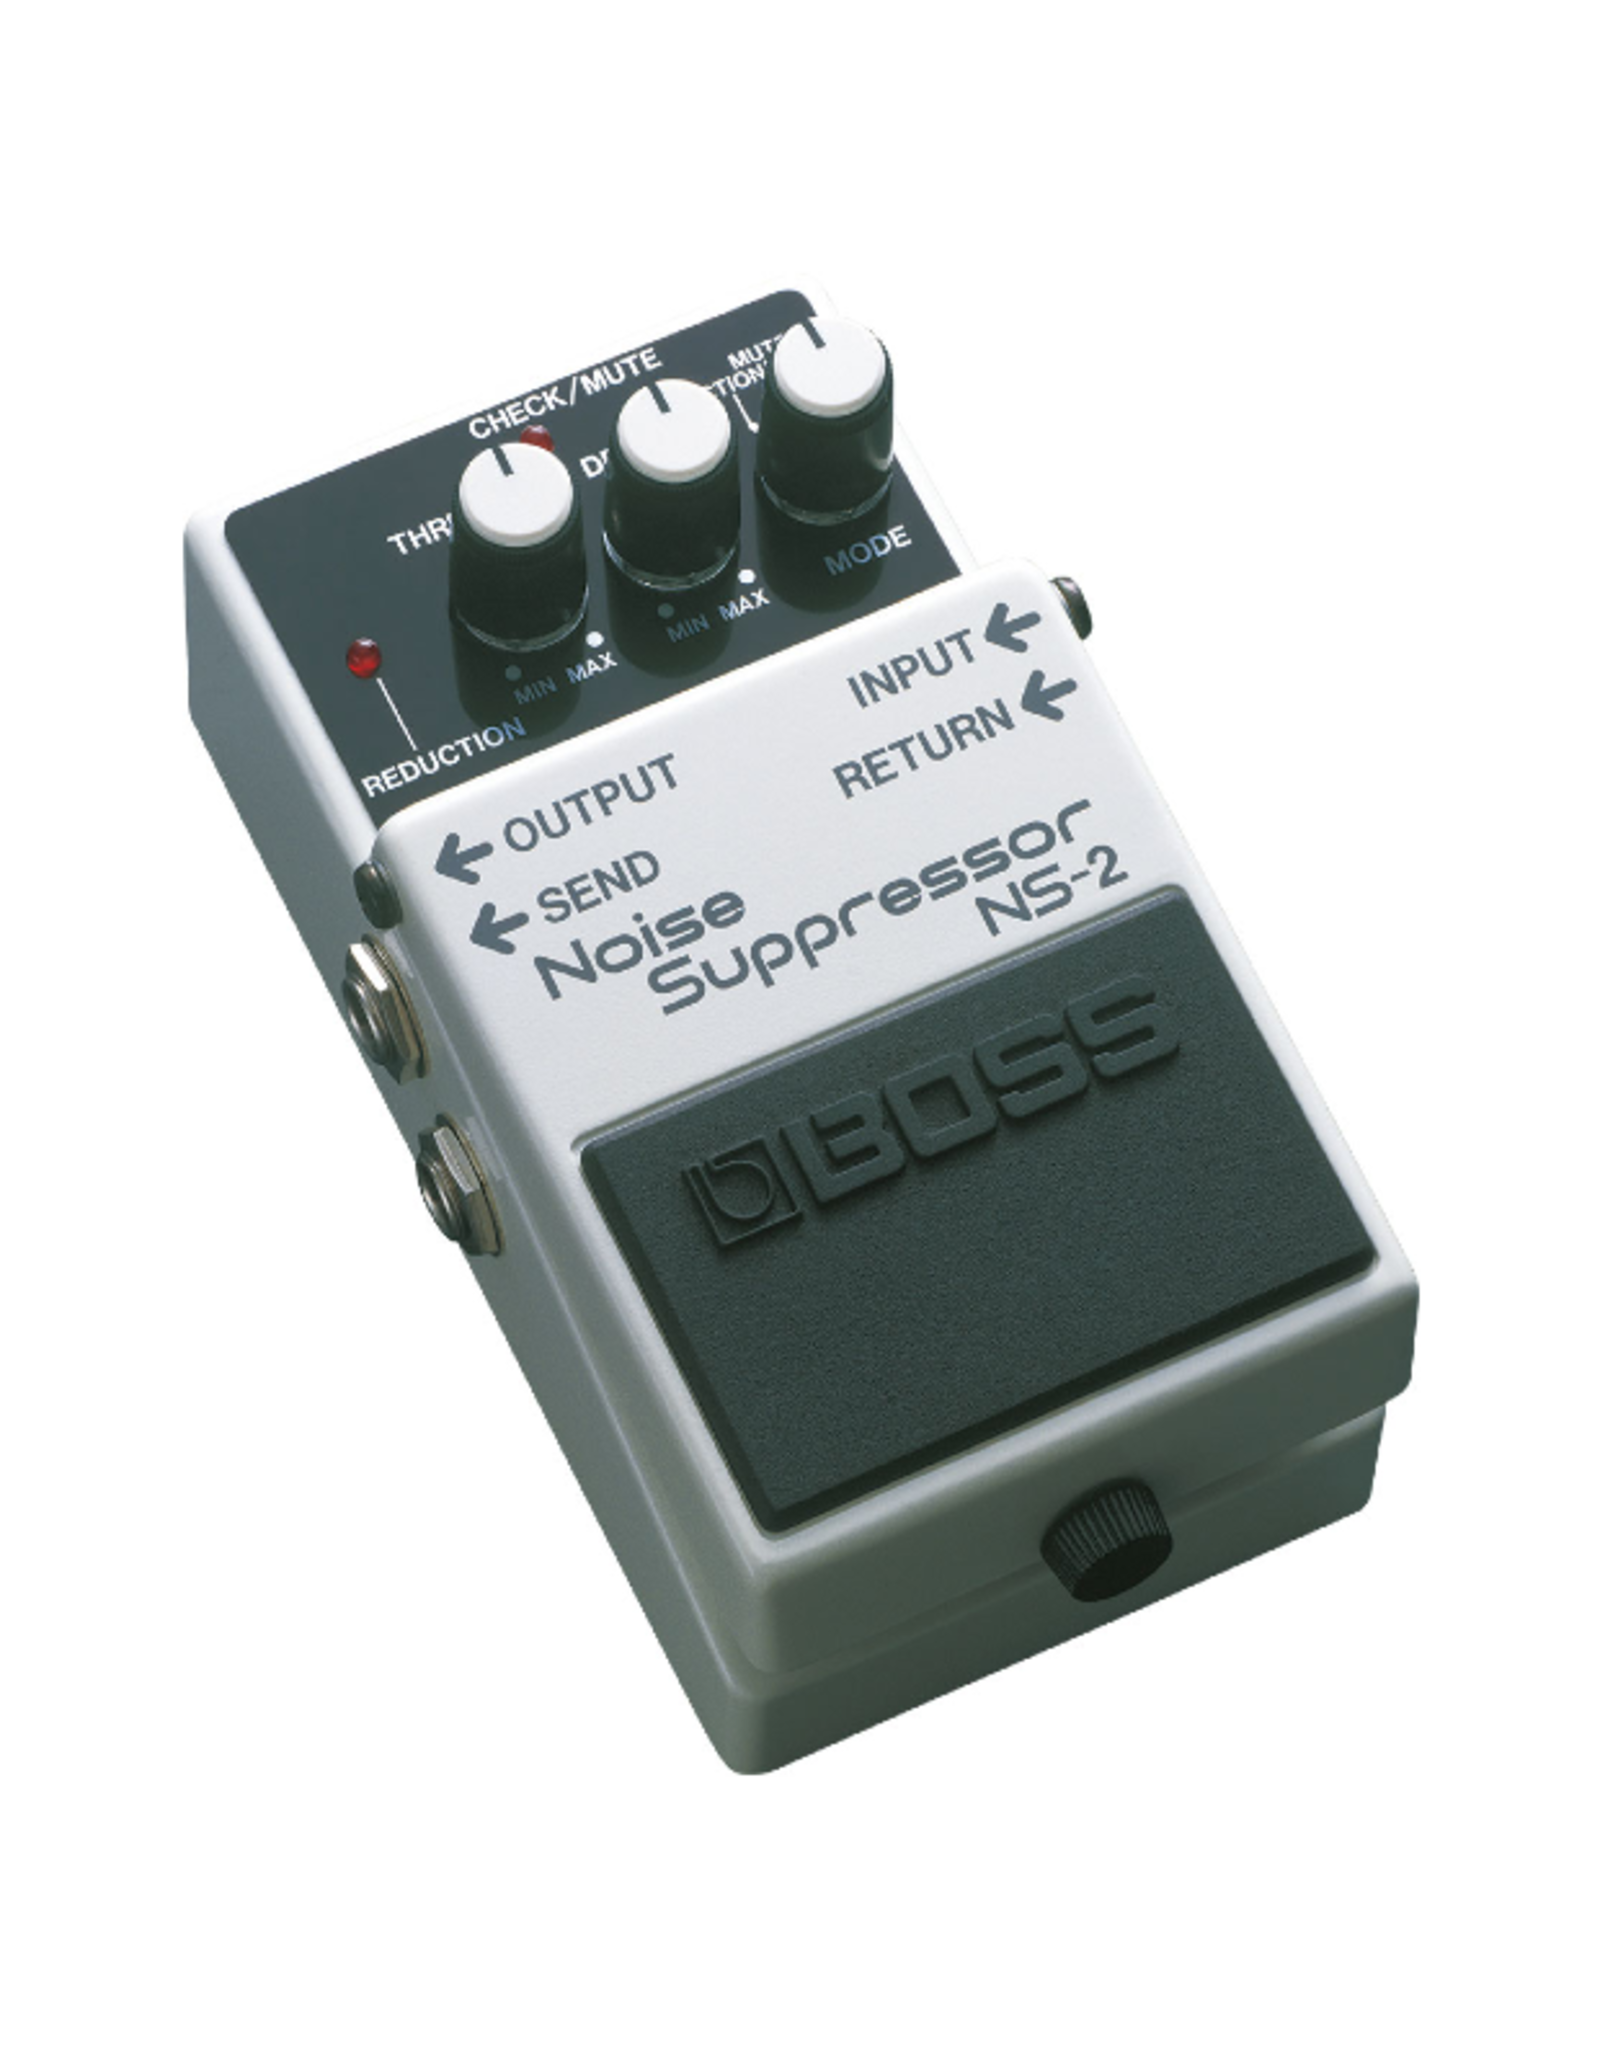 Boss Boss NS-2 Noise Suppressor - Store Demo Model